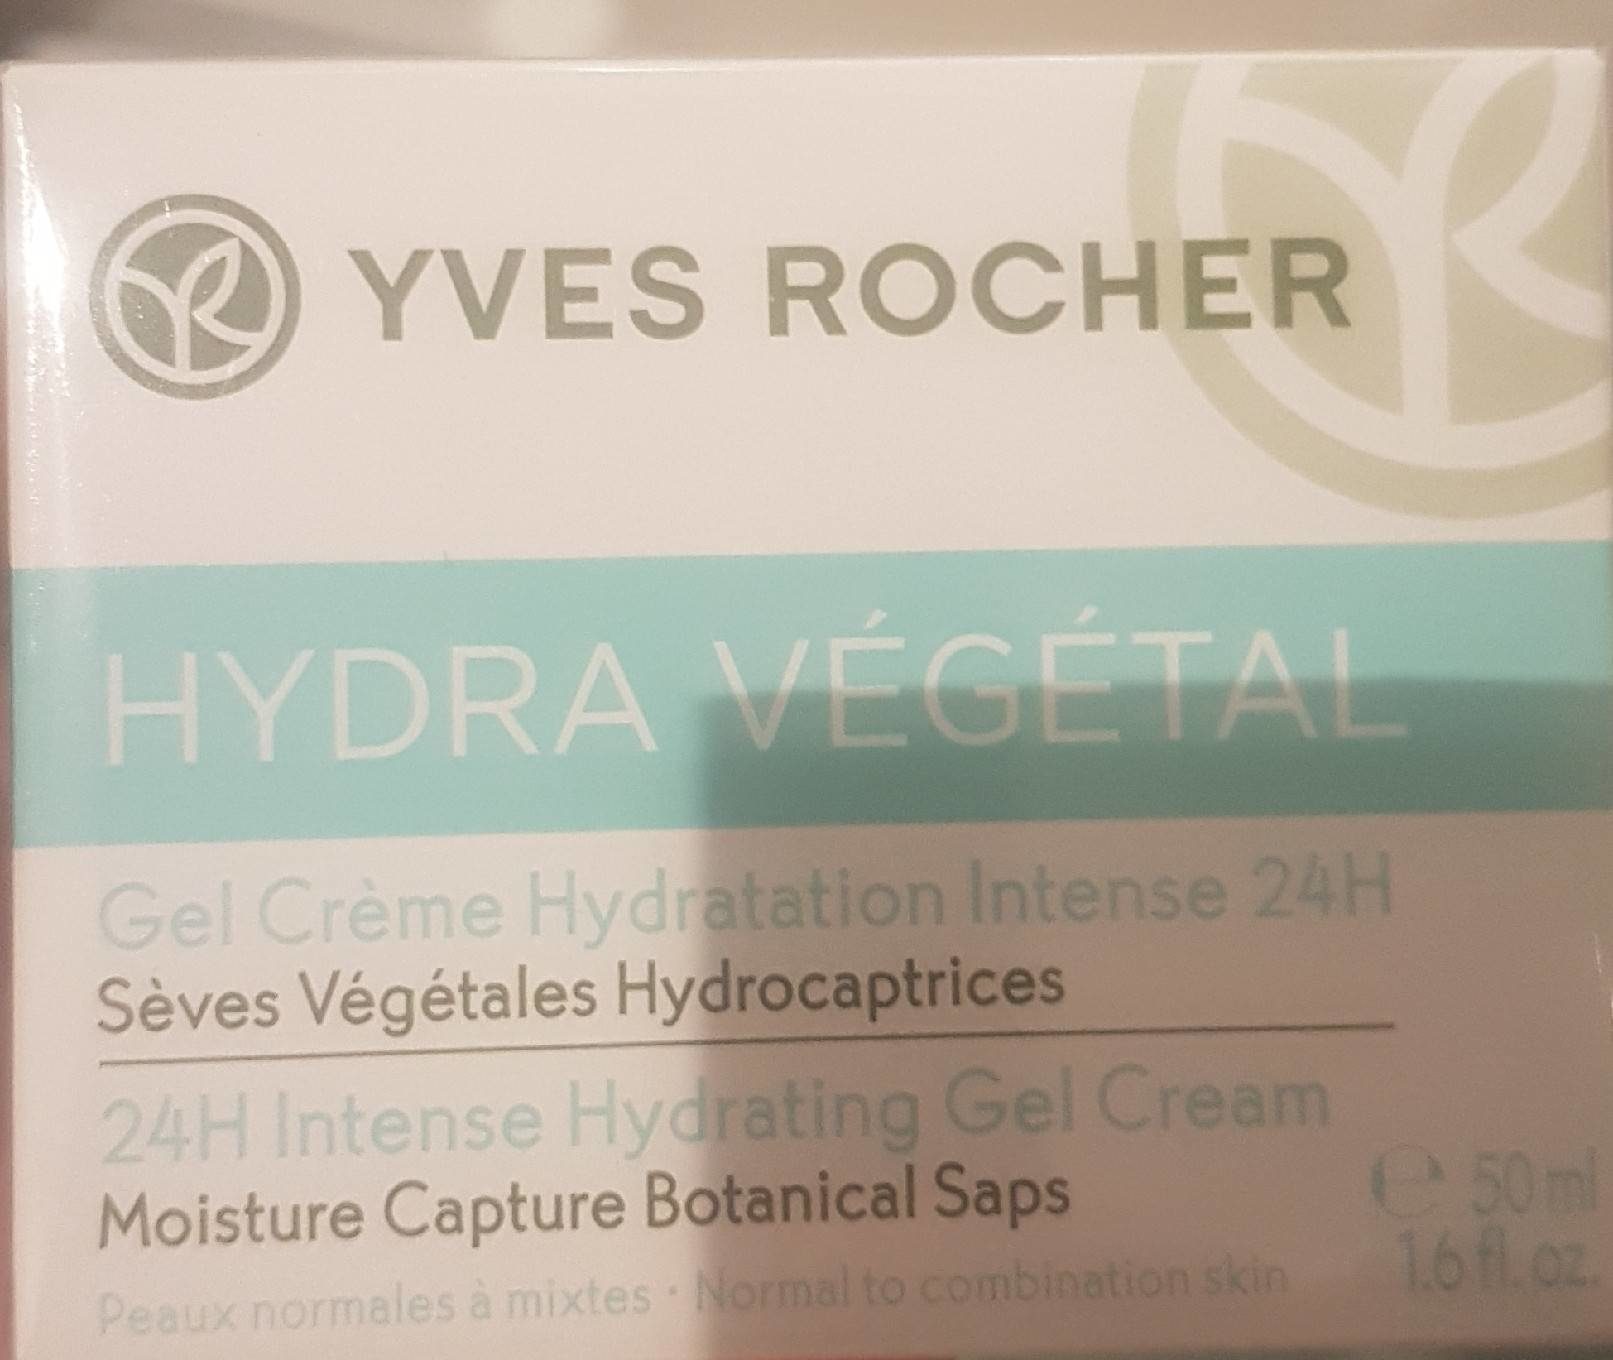 Yves Rocher Hydra Vegetal Creme Hydrating Gel Cream - Product - fr